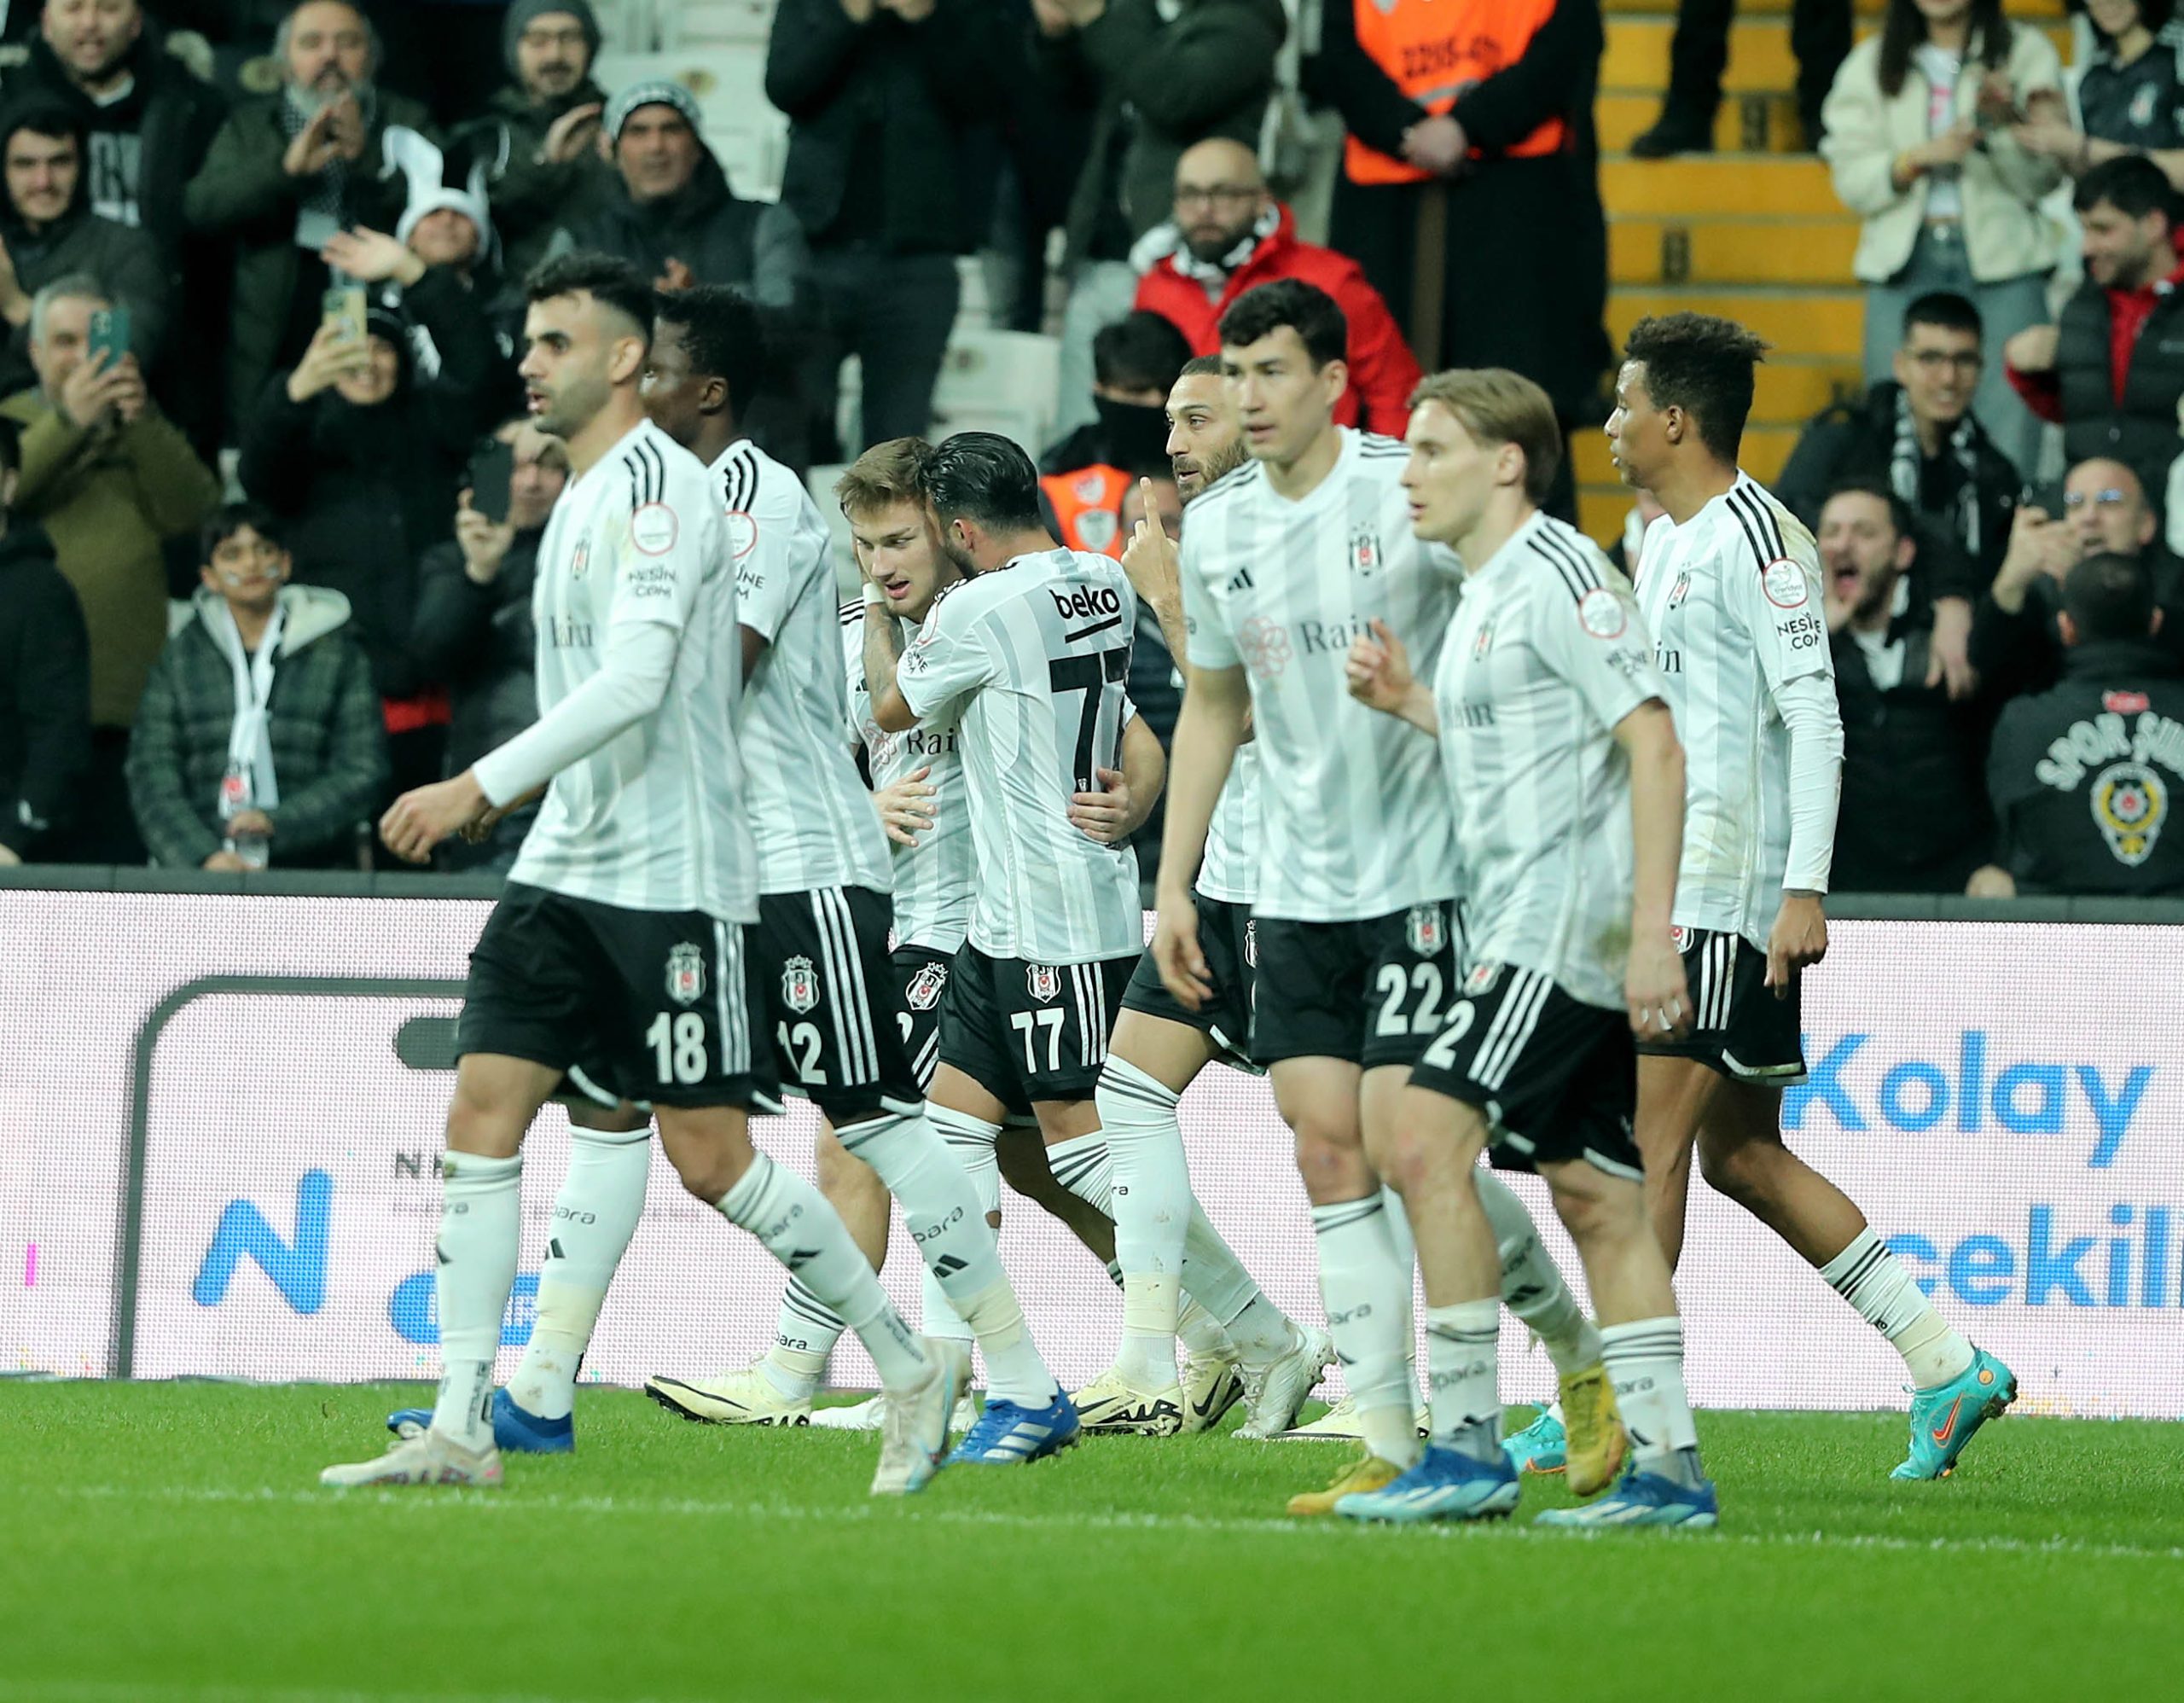 Beşiktaş, Karadağ'ın Buducnost takımıyla karşılaşıyor! Maç nerede, saat kaçta, hangi kanalda?